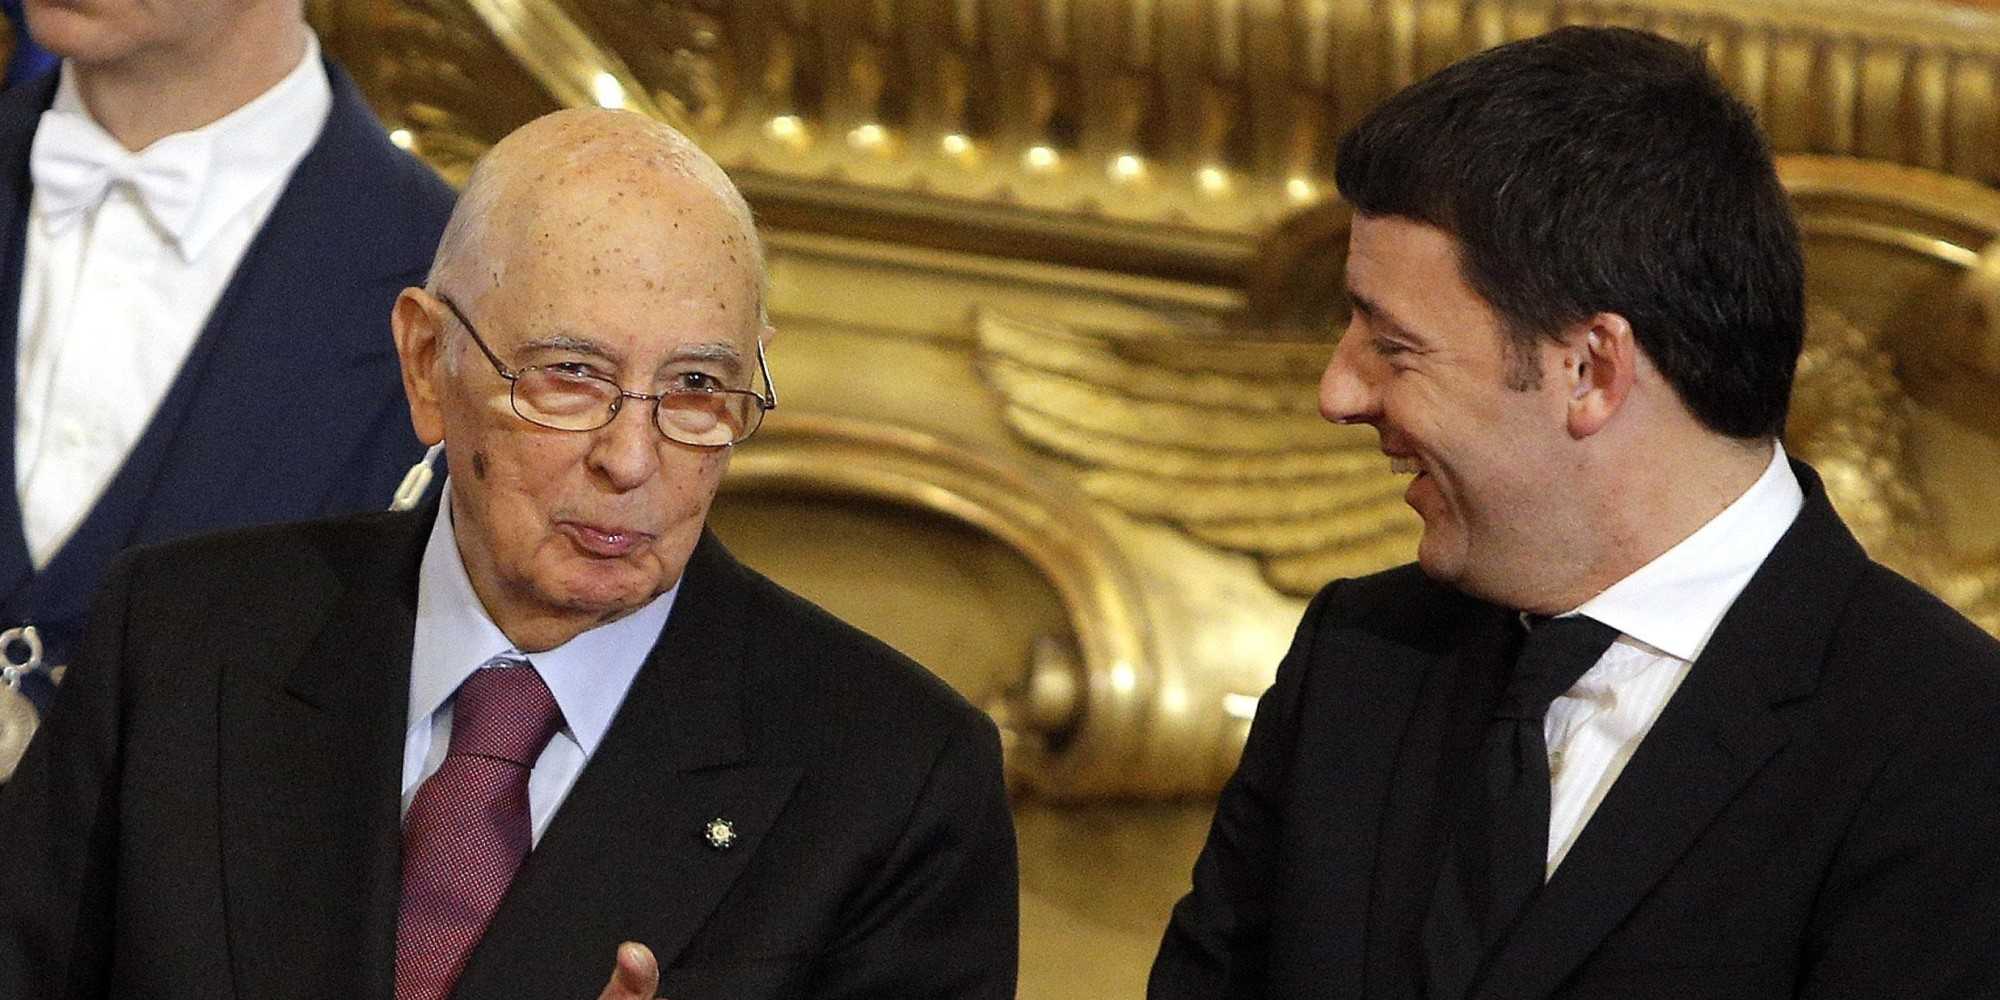 Renzi al Quirinale rassicura sulle riforme, ma Napolitano è incerto: dimissioni in anticipo?